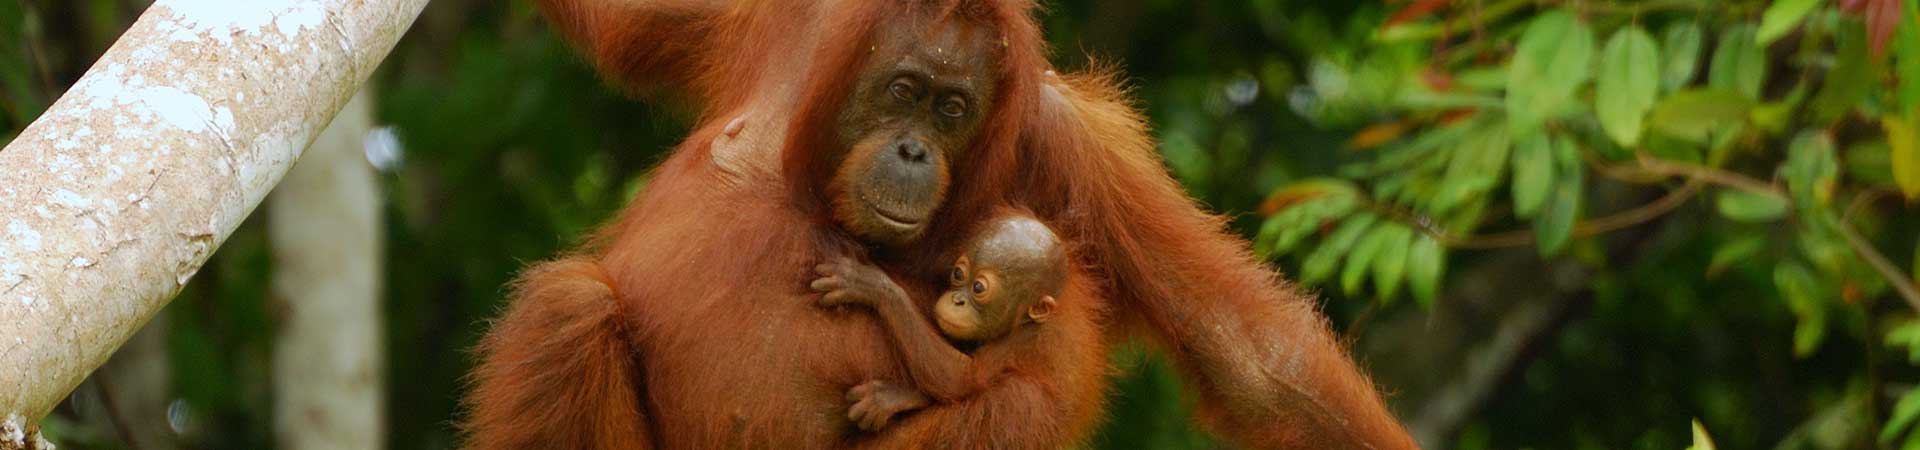 Safari de vida silvestre de Borneo y experiencia de voluntariado